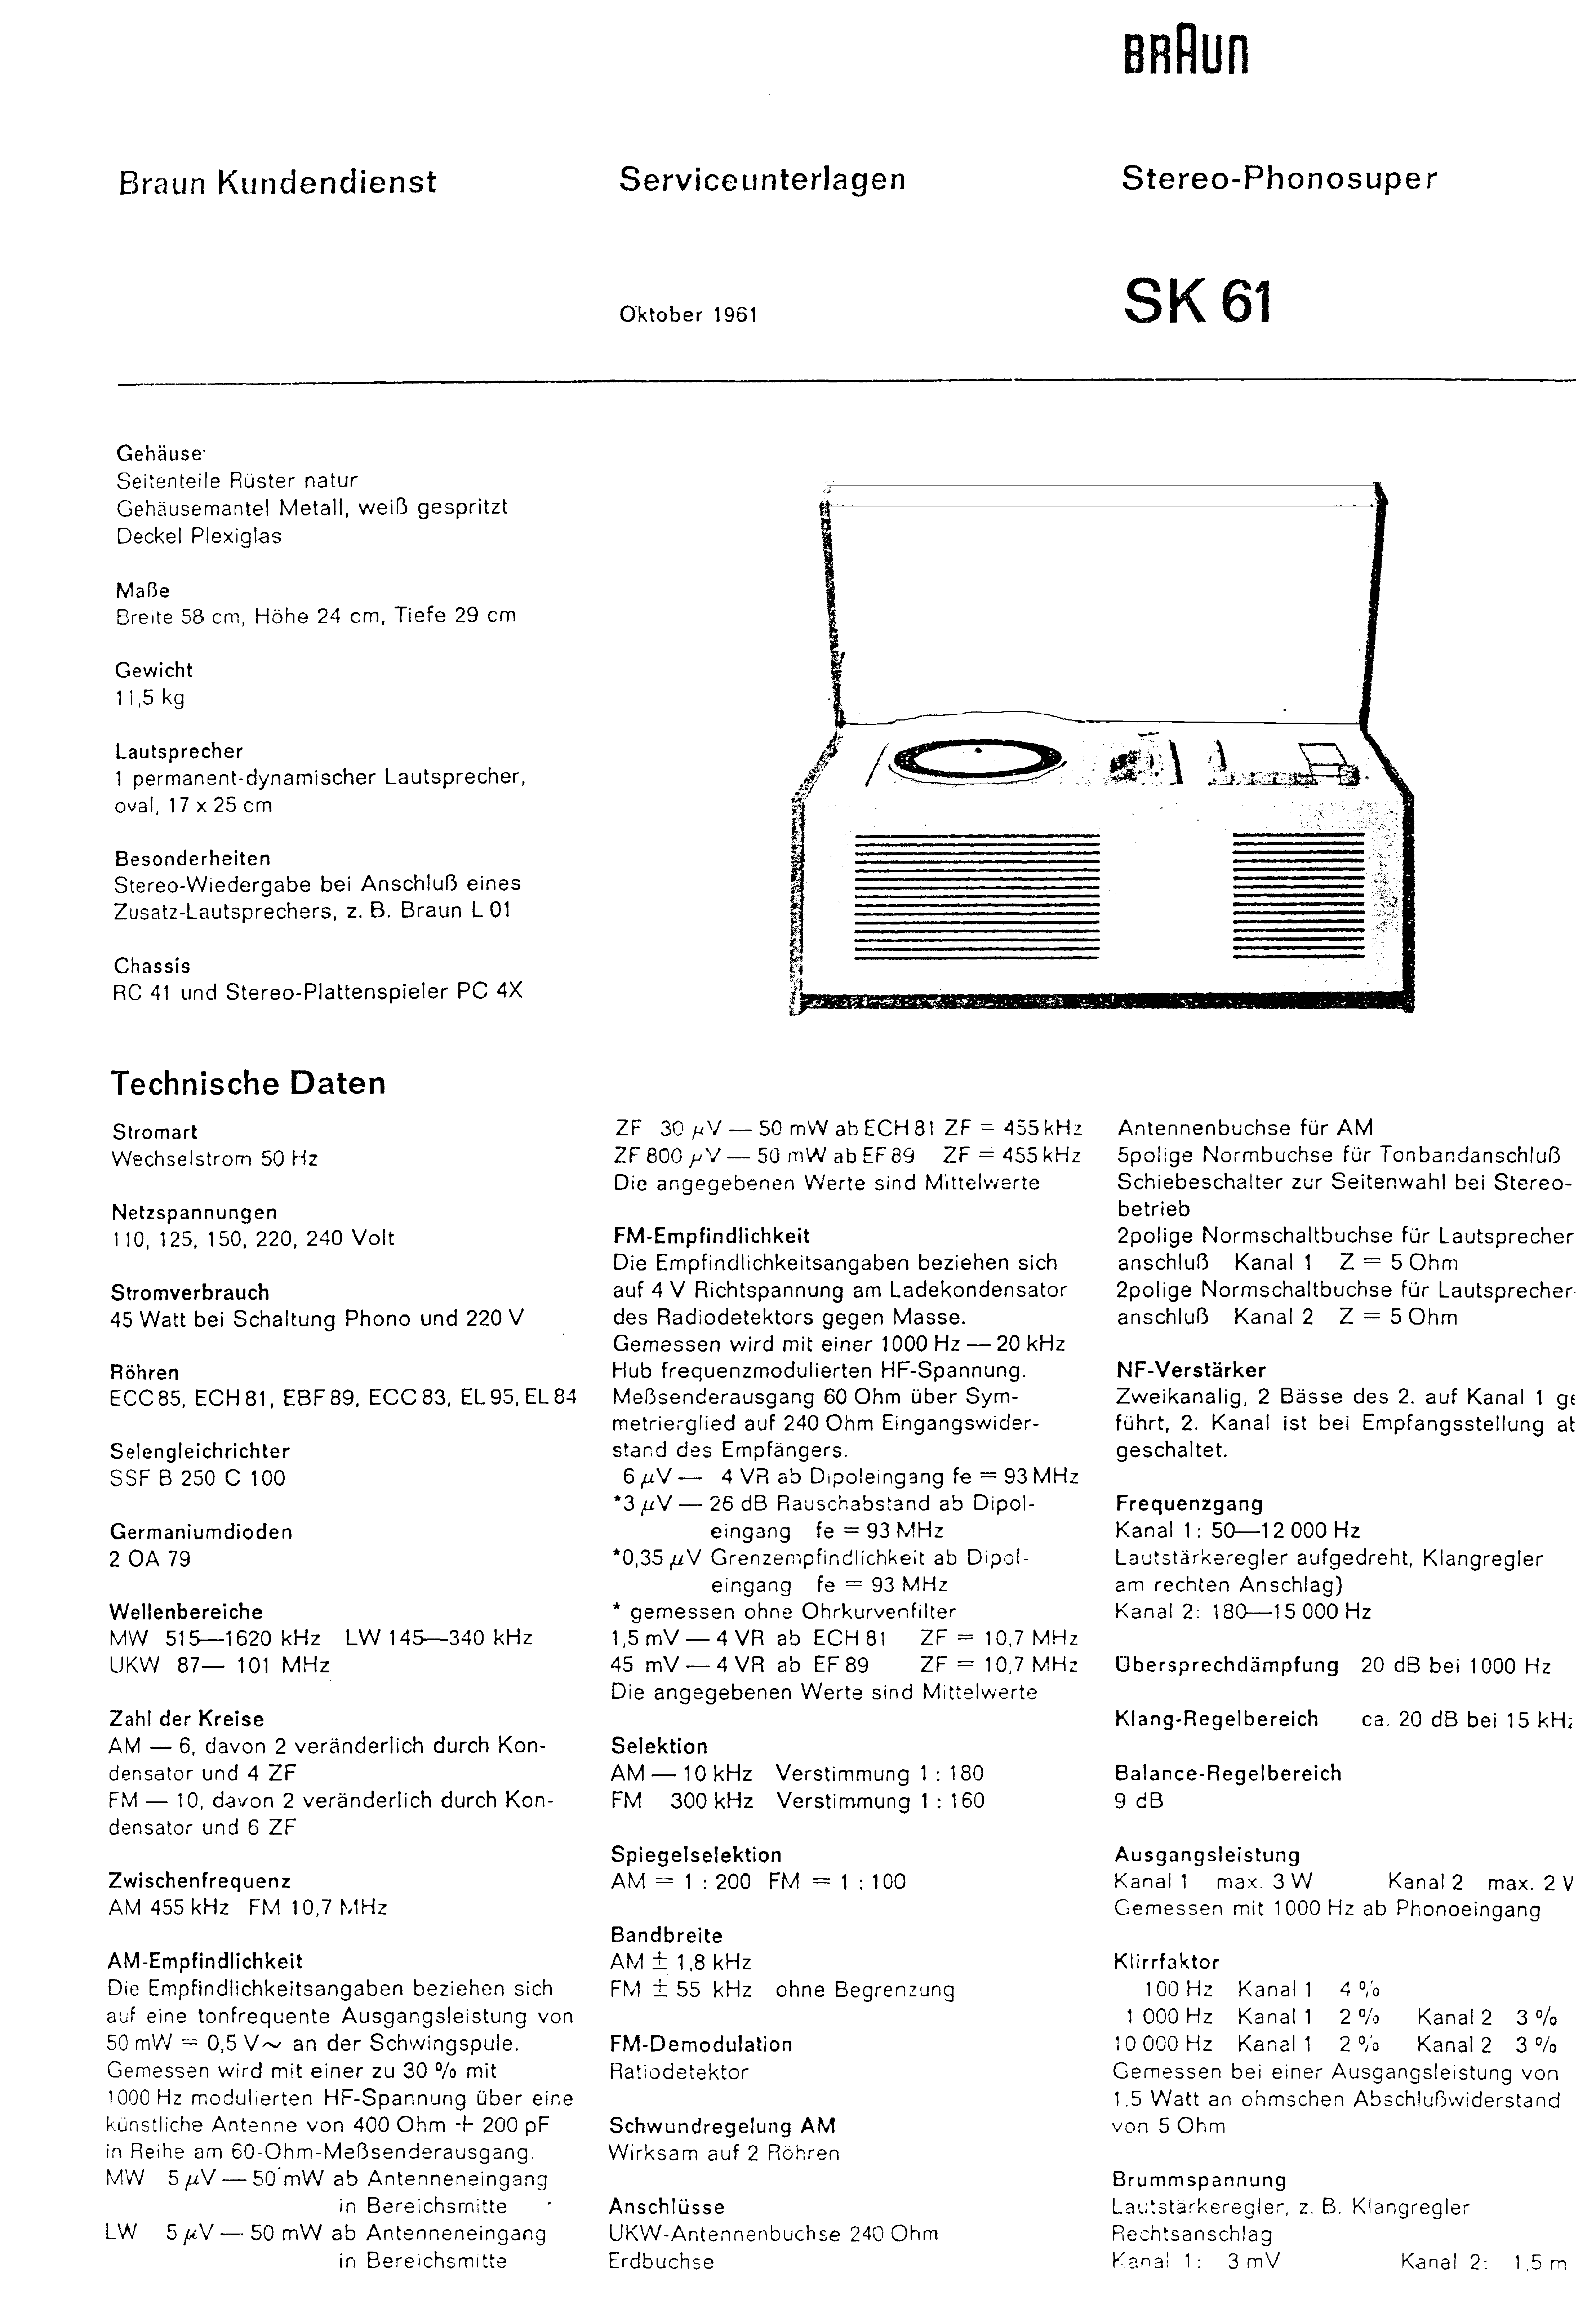 Service Manual-Anleitung für Braun SK 61